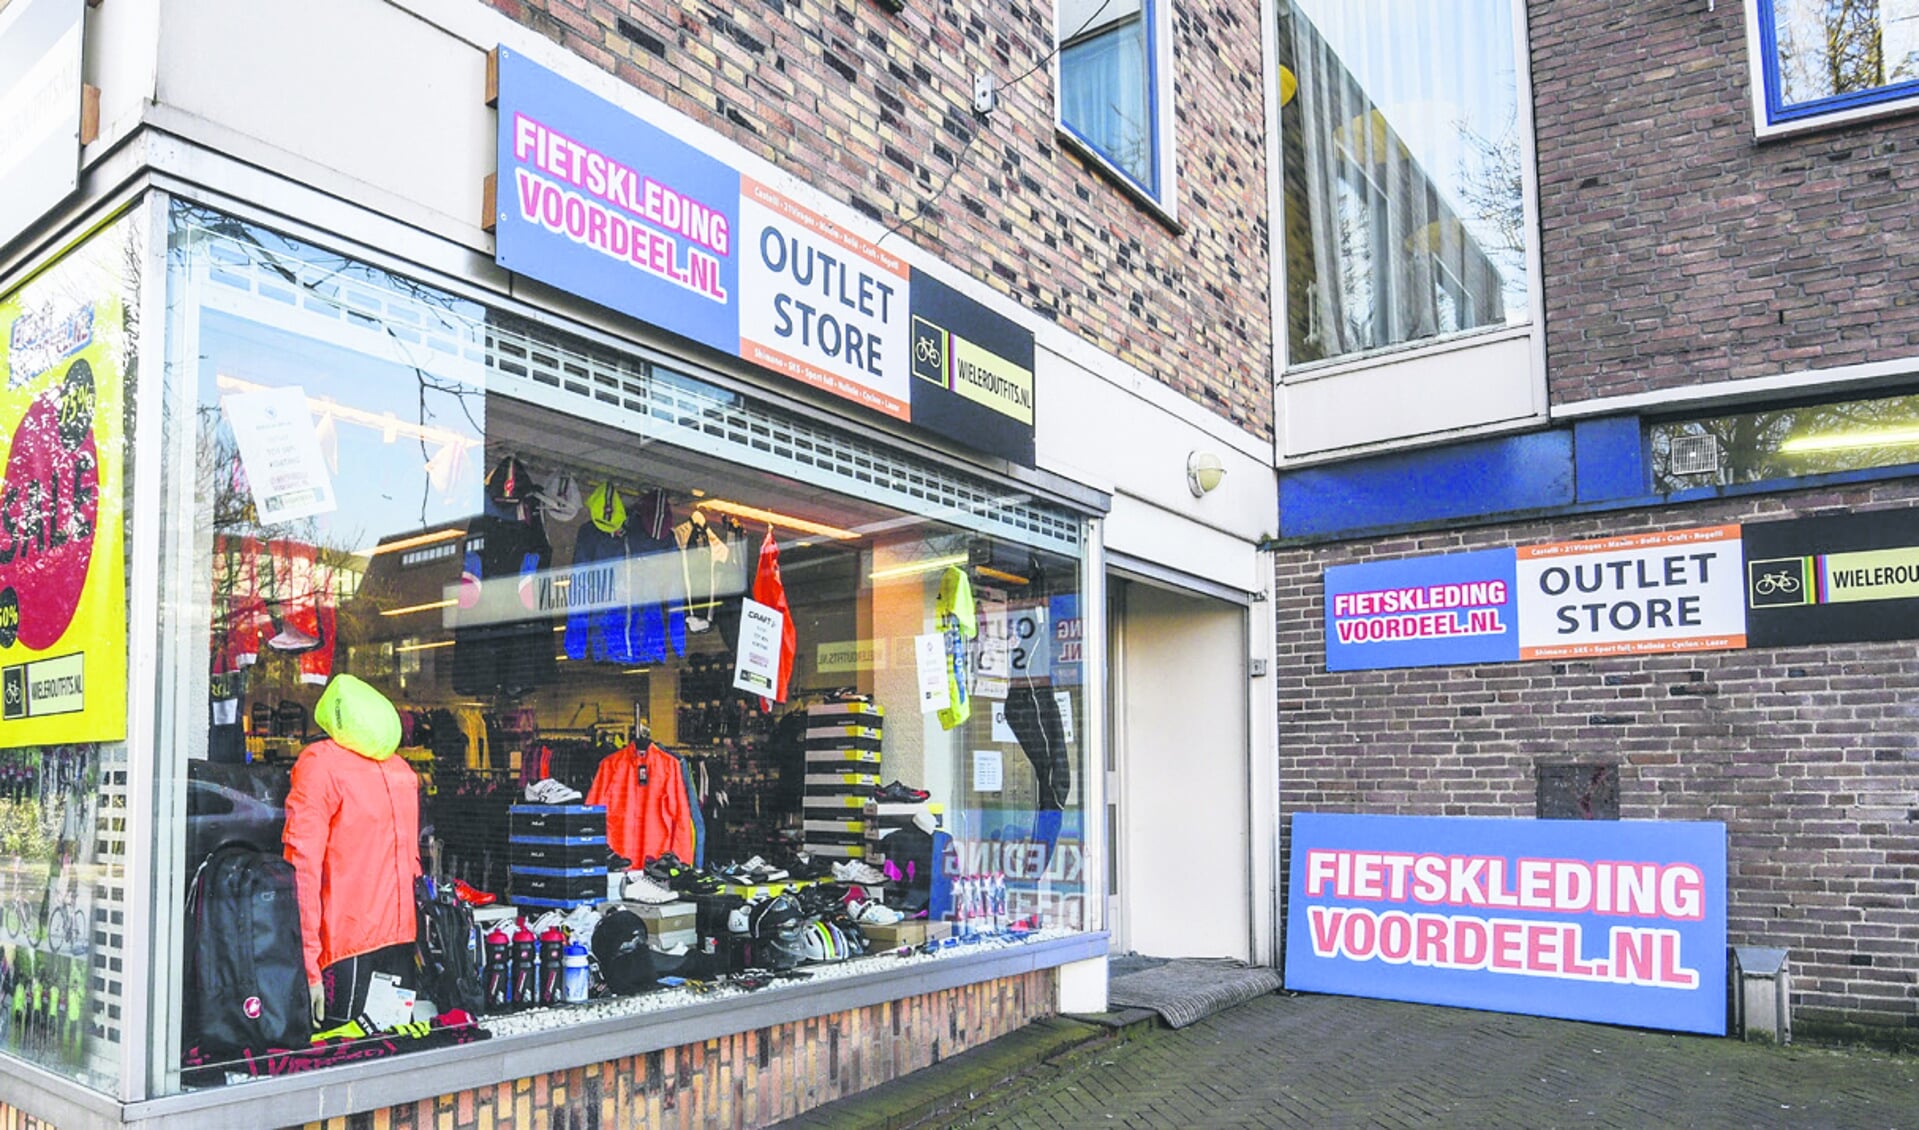 Turbulentie Tips Harnas Outletstore met fietskleding en accessoires in Ouderkerk -  amstelveensnieuwsblad.nl Nieuws uit de regio Amstelveen